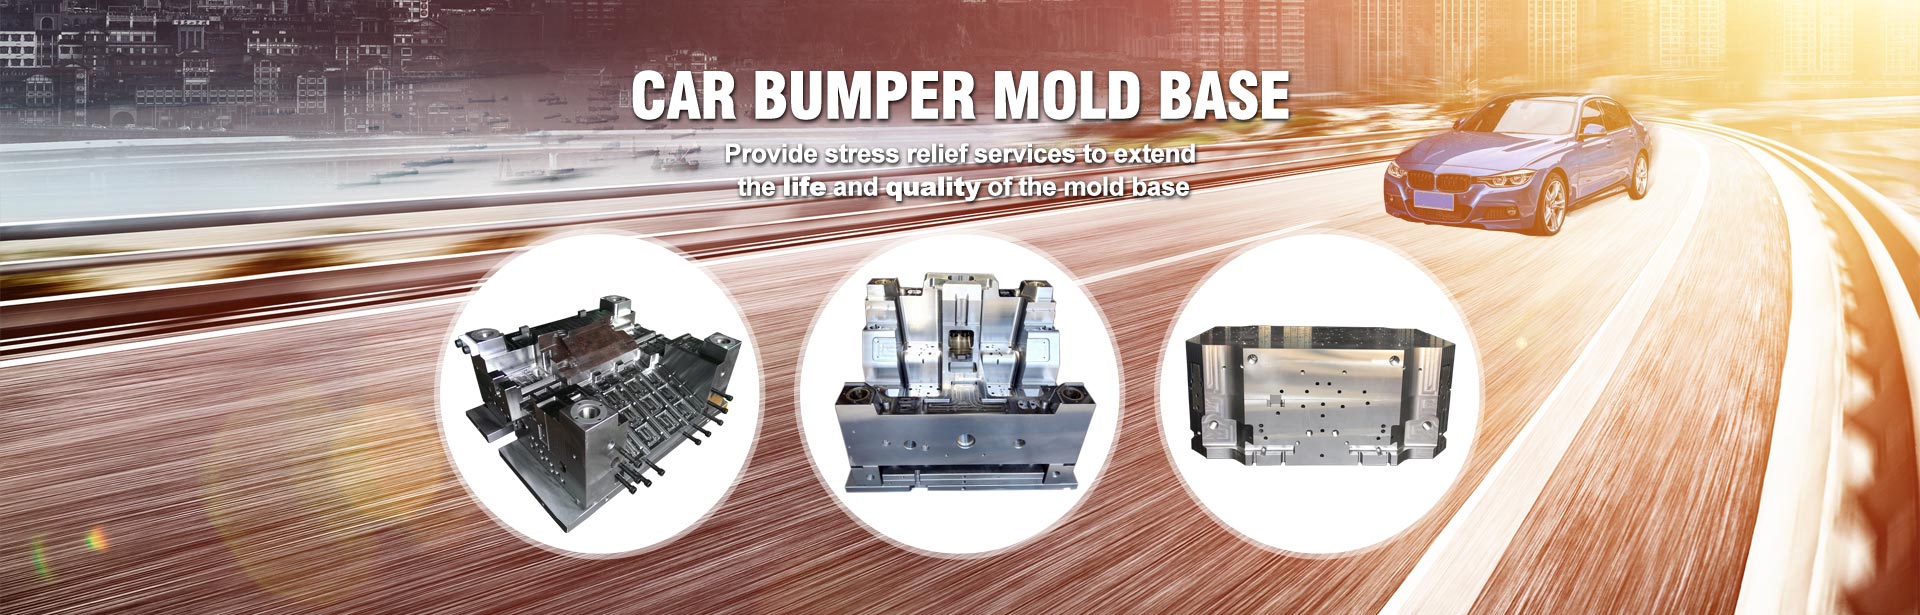 Car Bumper Mold Base